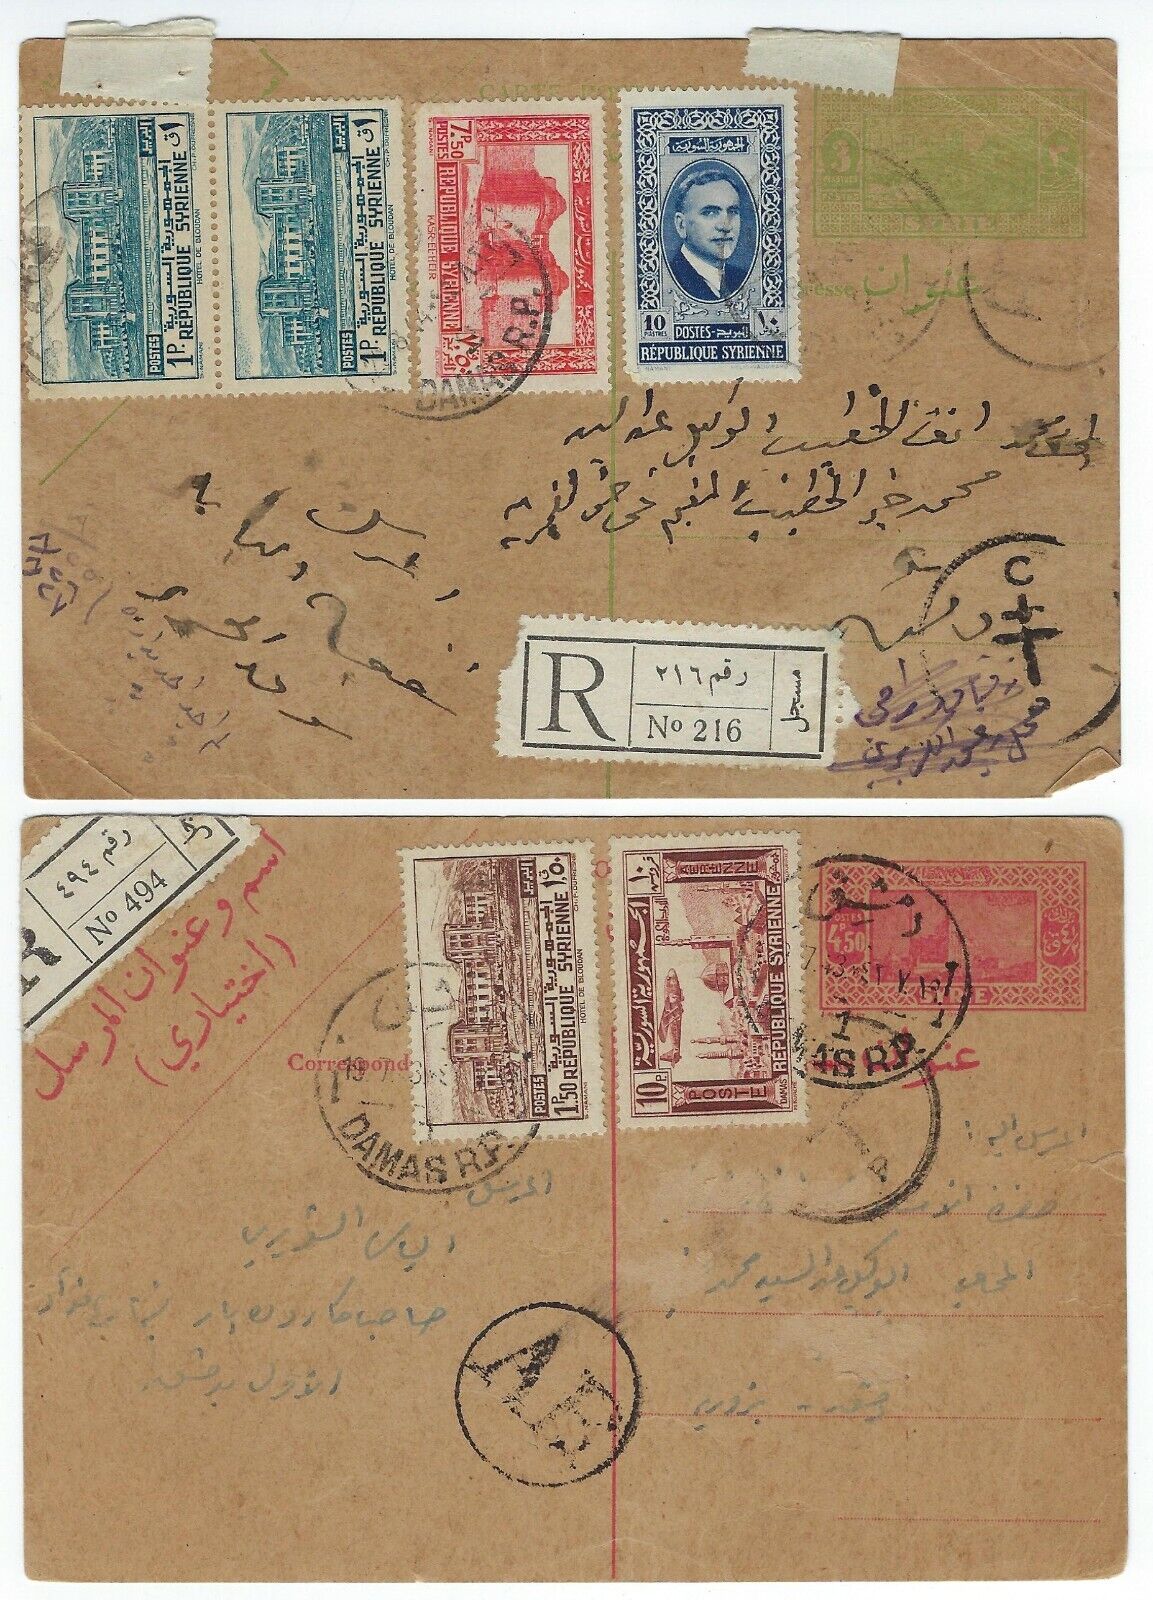 SYRIA 1944 TWO WWII UPRATED REGISTERED POSTAL CARDS 3pi & 4 1/2p WYPRZEDAŻ, darmowa wysyłka